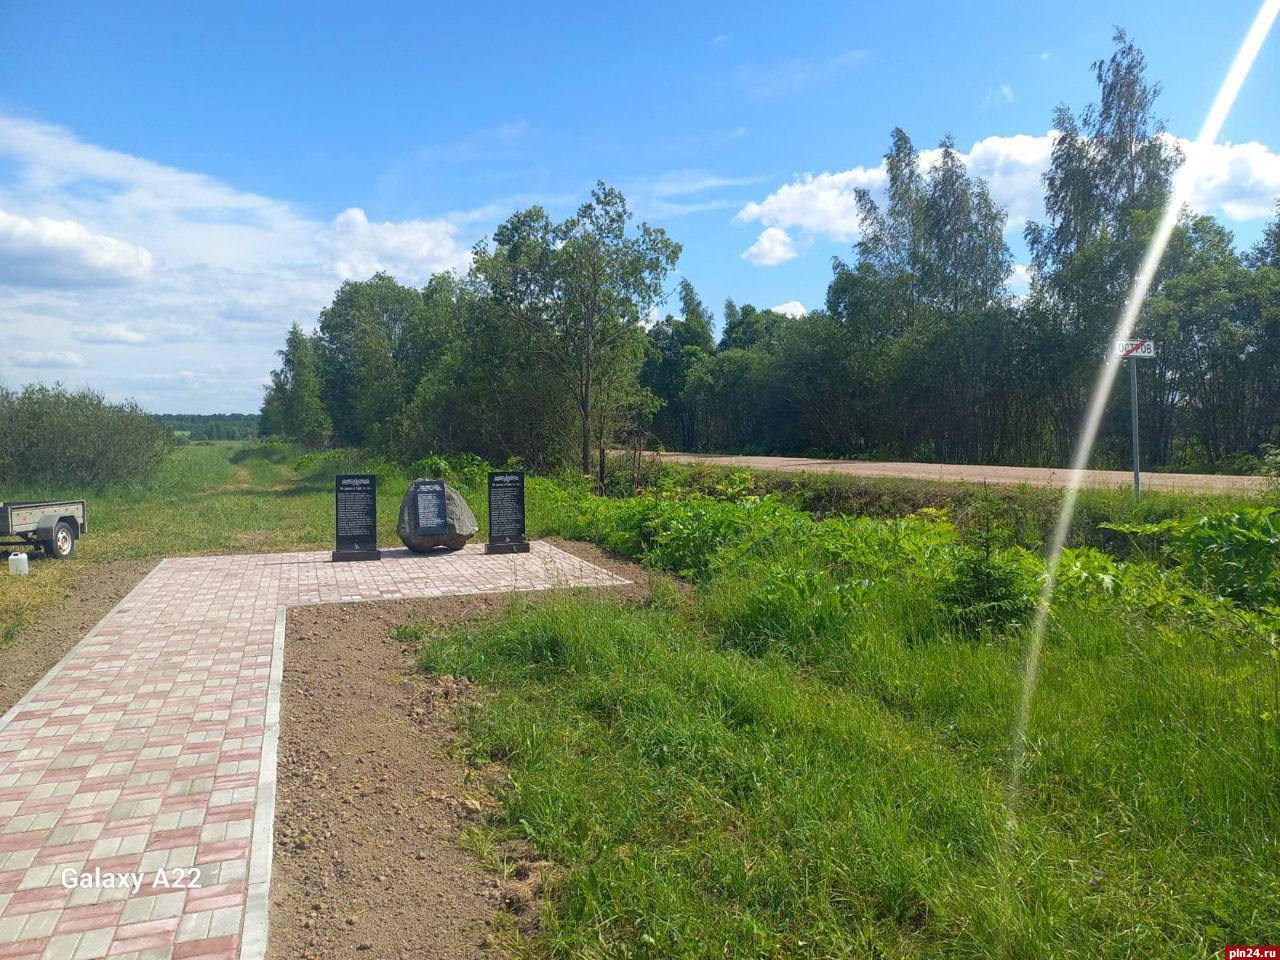 Мемориал героям Великой Отечественной войны появился в деревне Остров Плюсского района